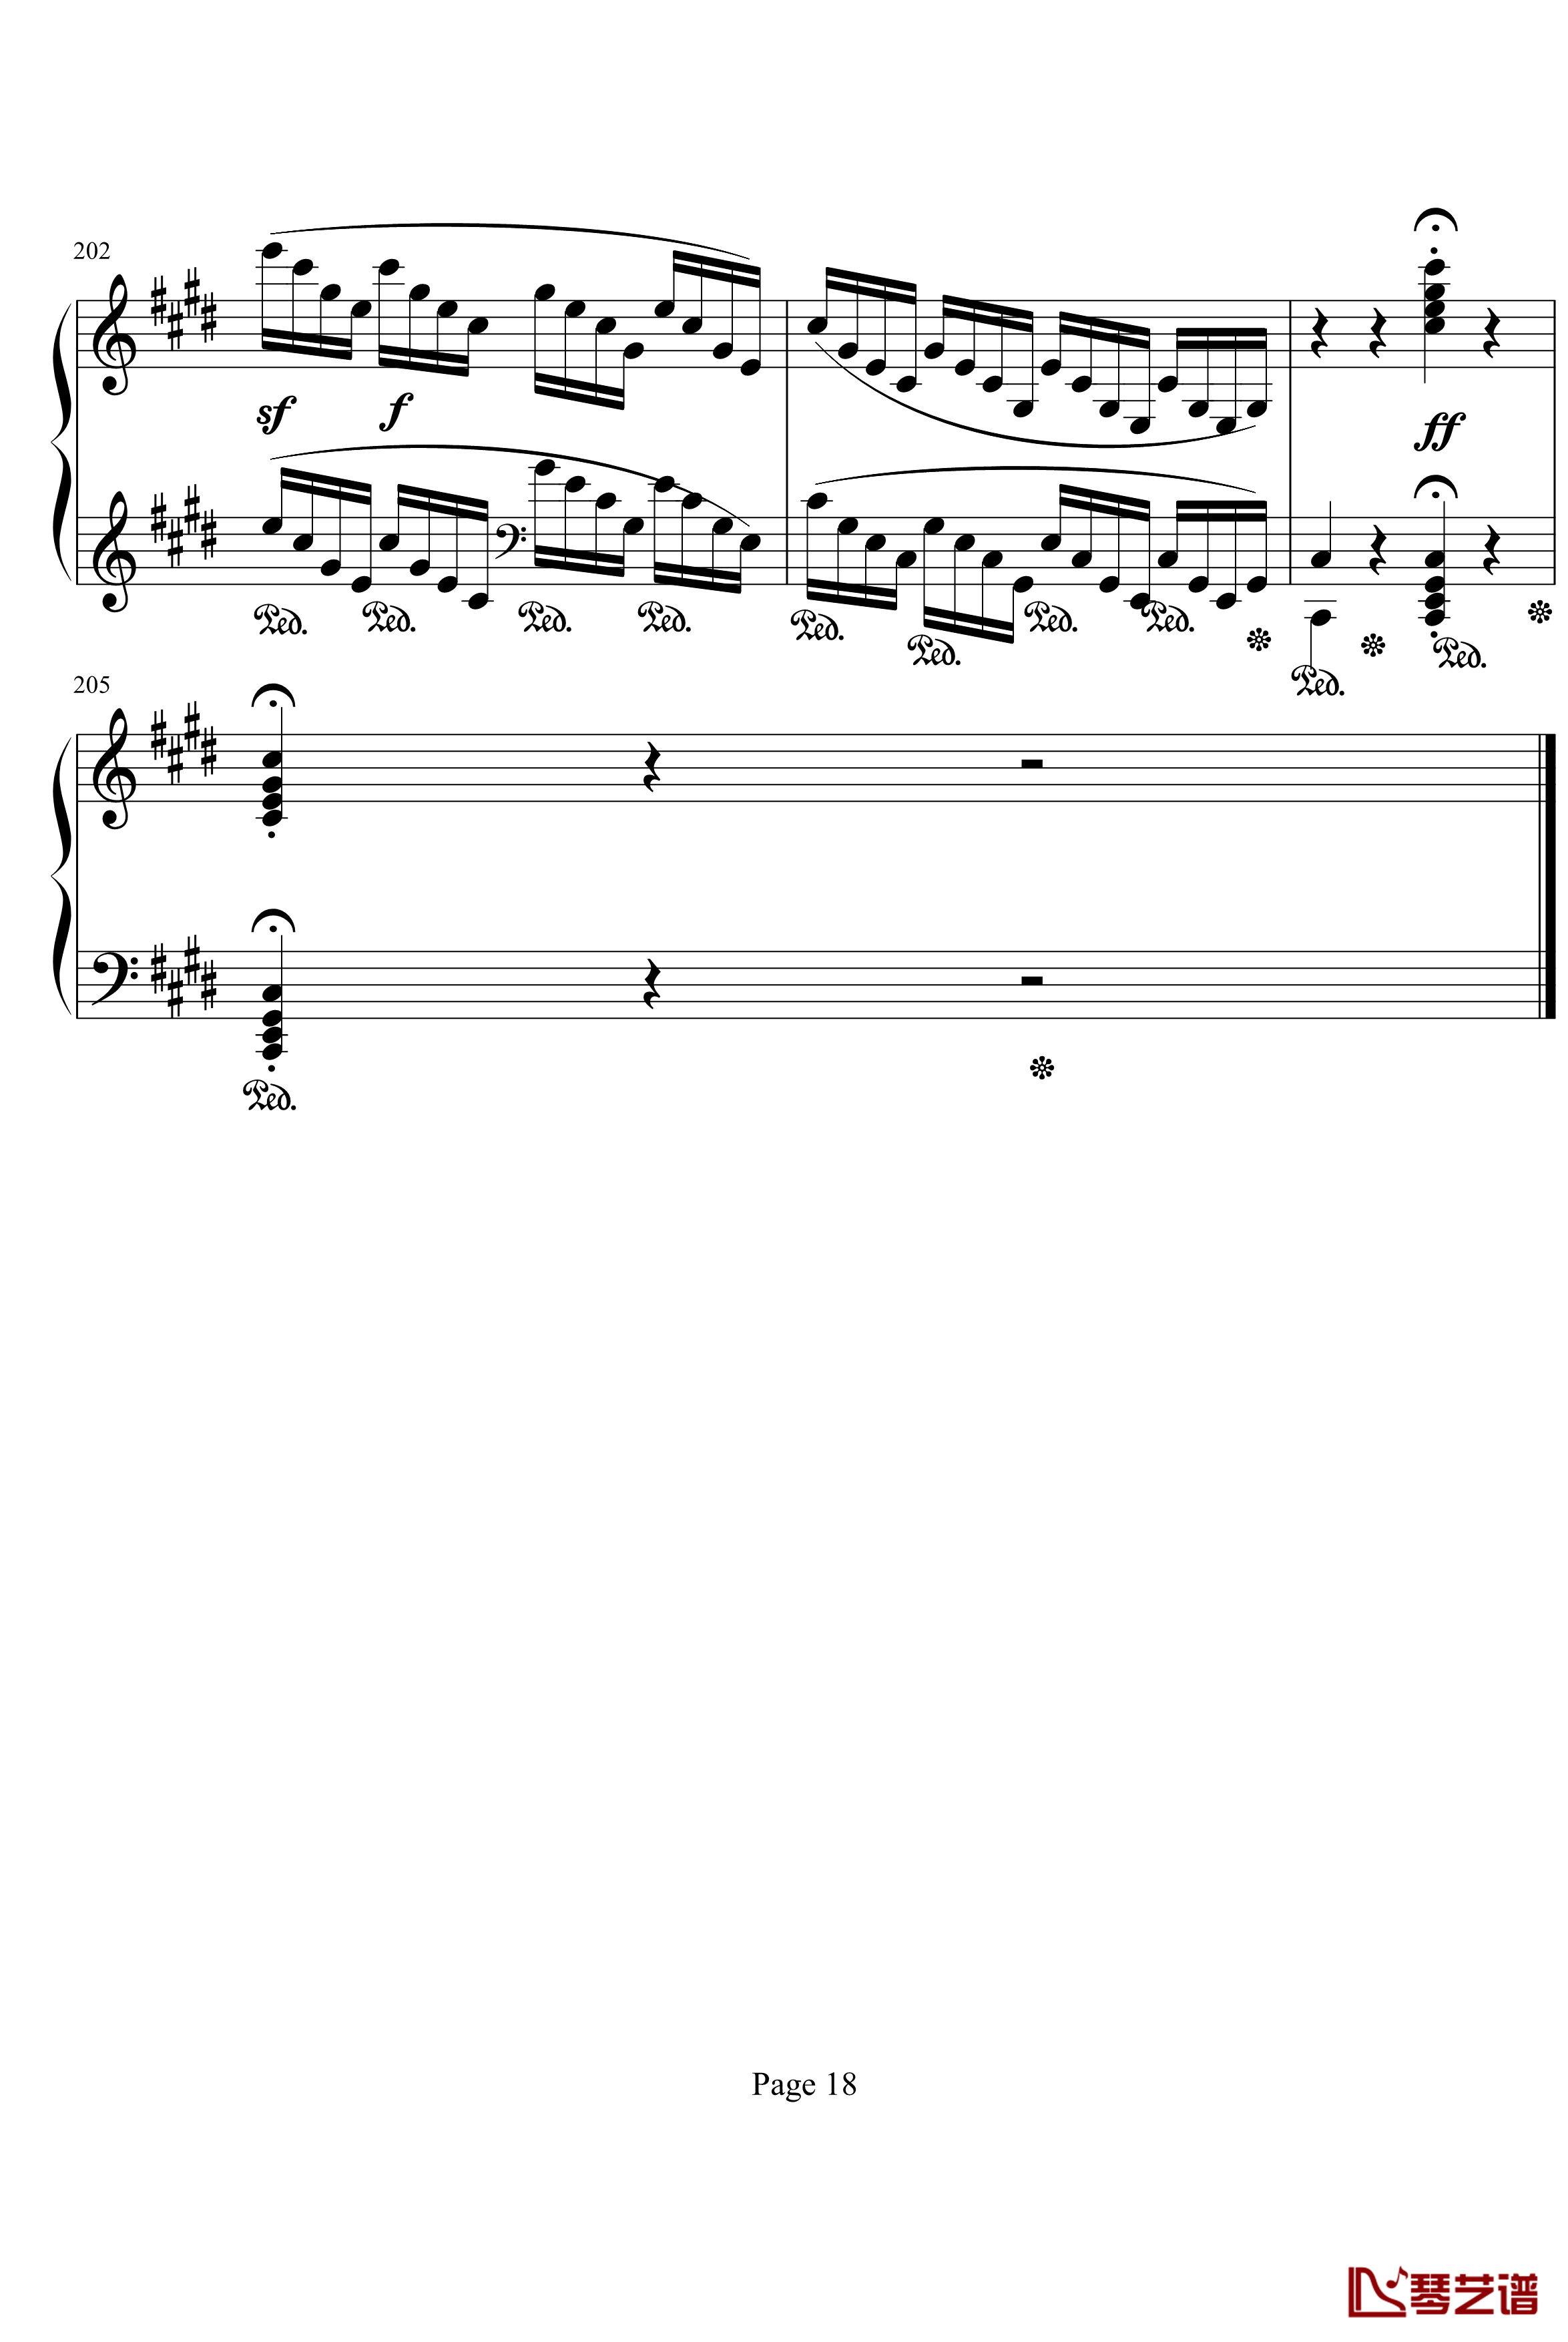 月光奏明曲钢琴谱-作品27之2-贝多芬-beethoven18